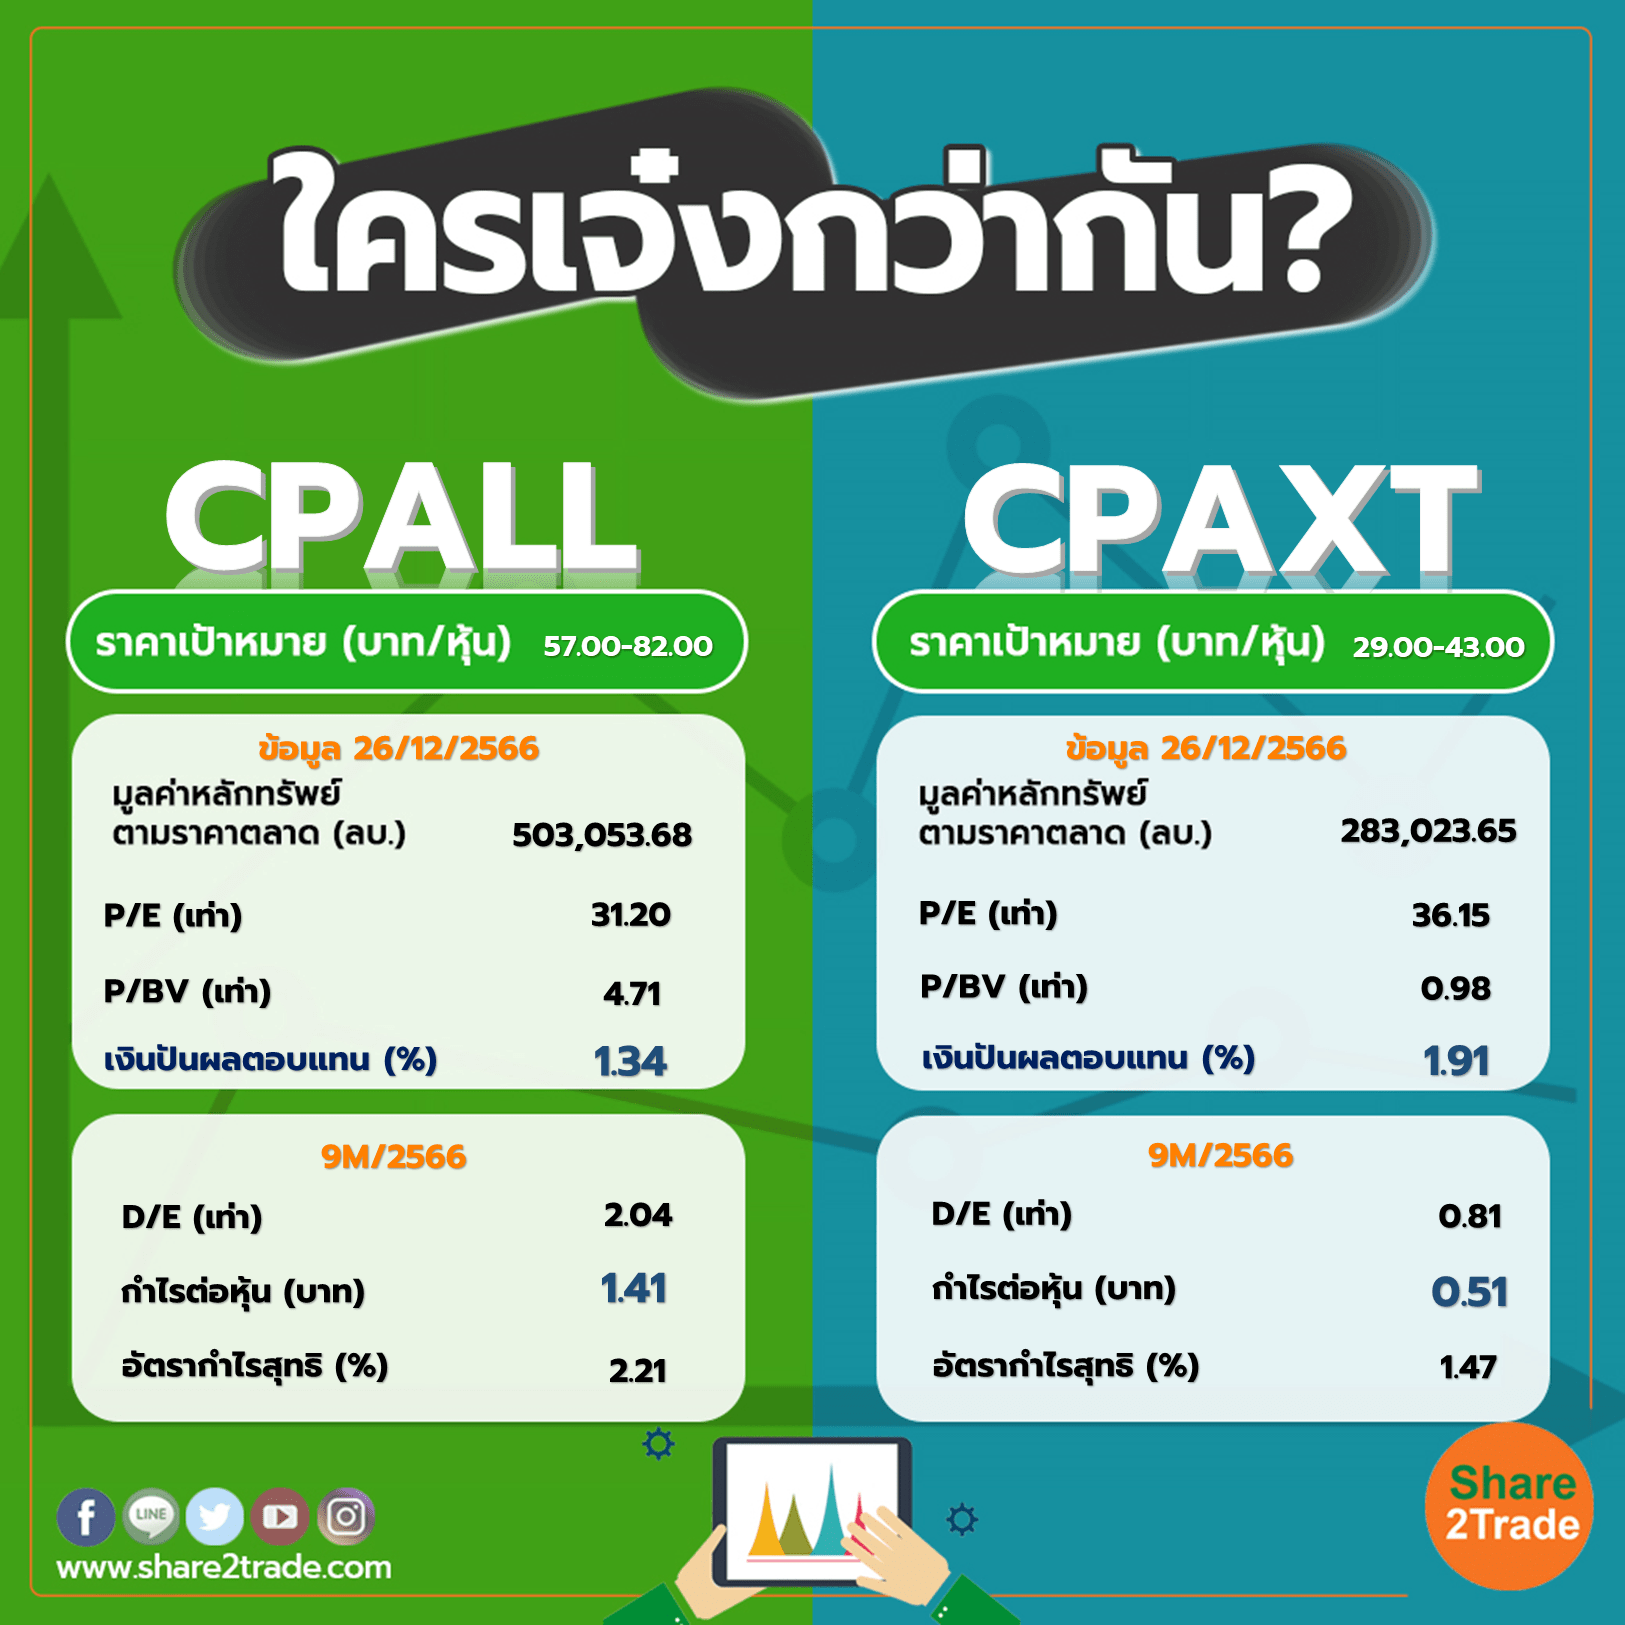 ใครเจ๋งกว่ากัน "CPALL" VS "CPAXT"